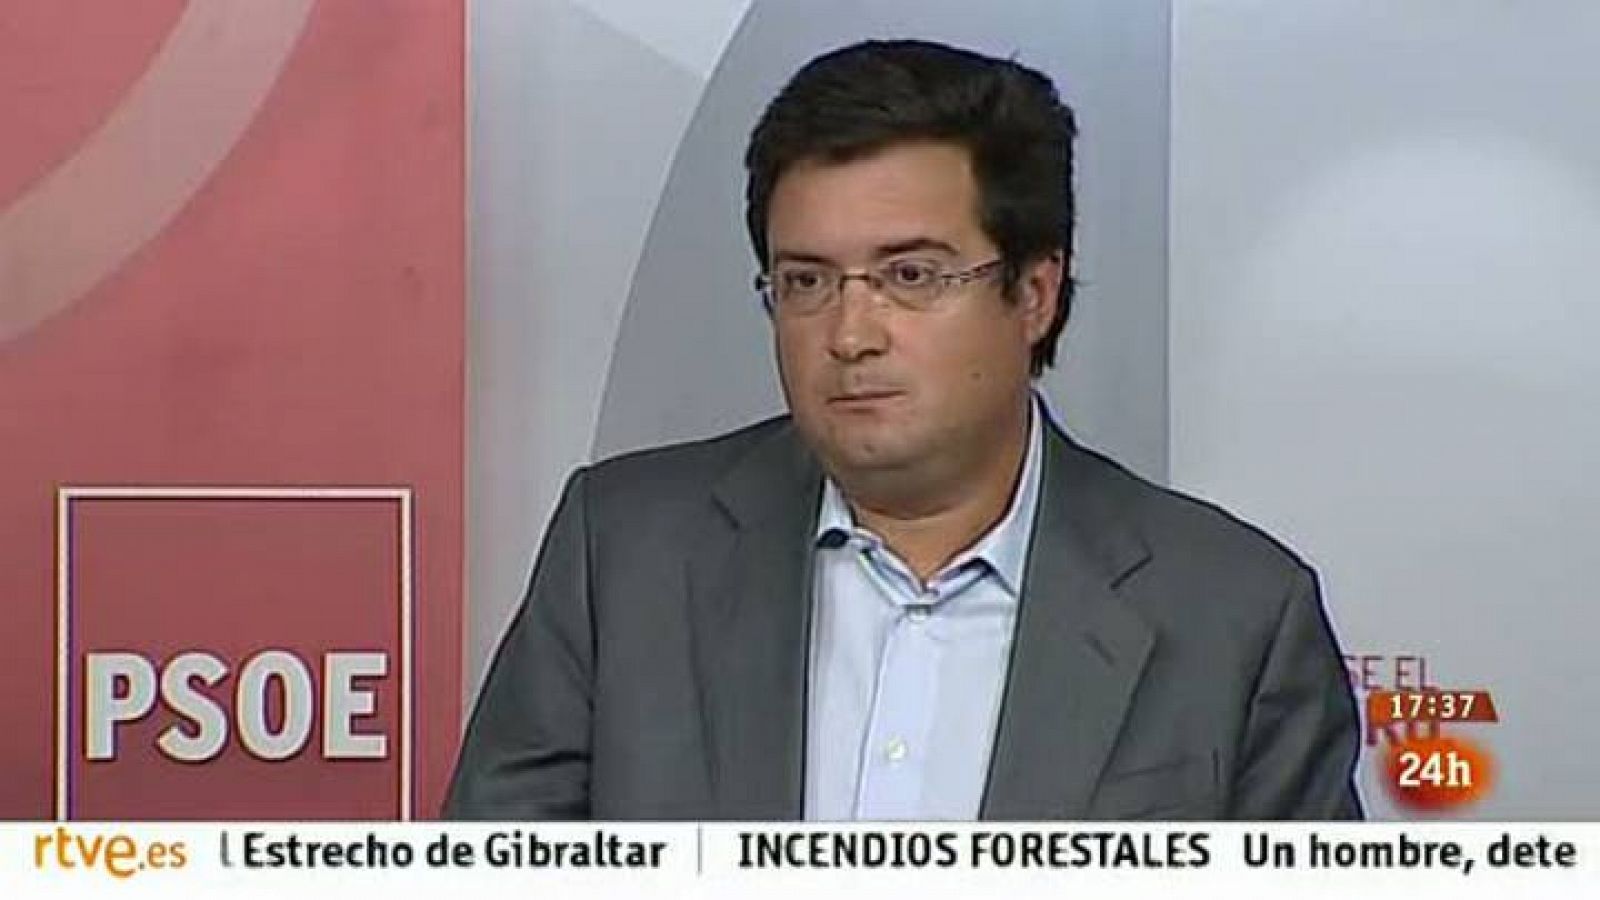 El PSOE pide la dimisión de Rajoy e IU propone elecciones anticipadas 